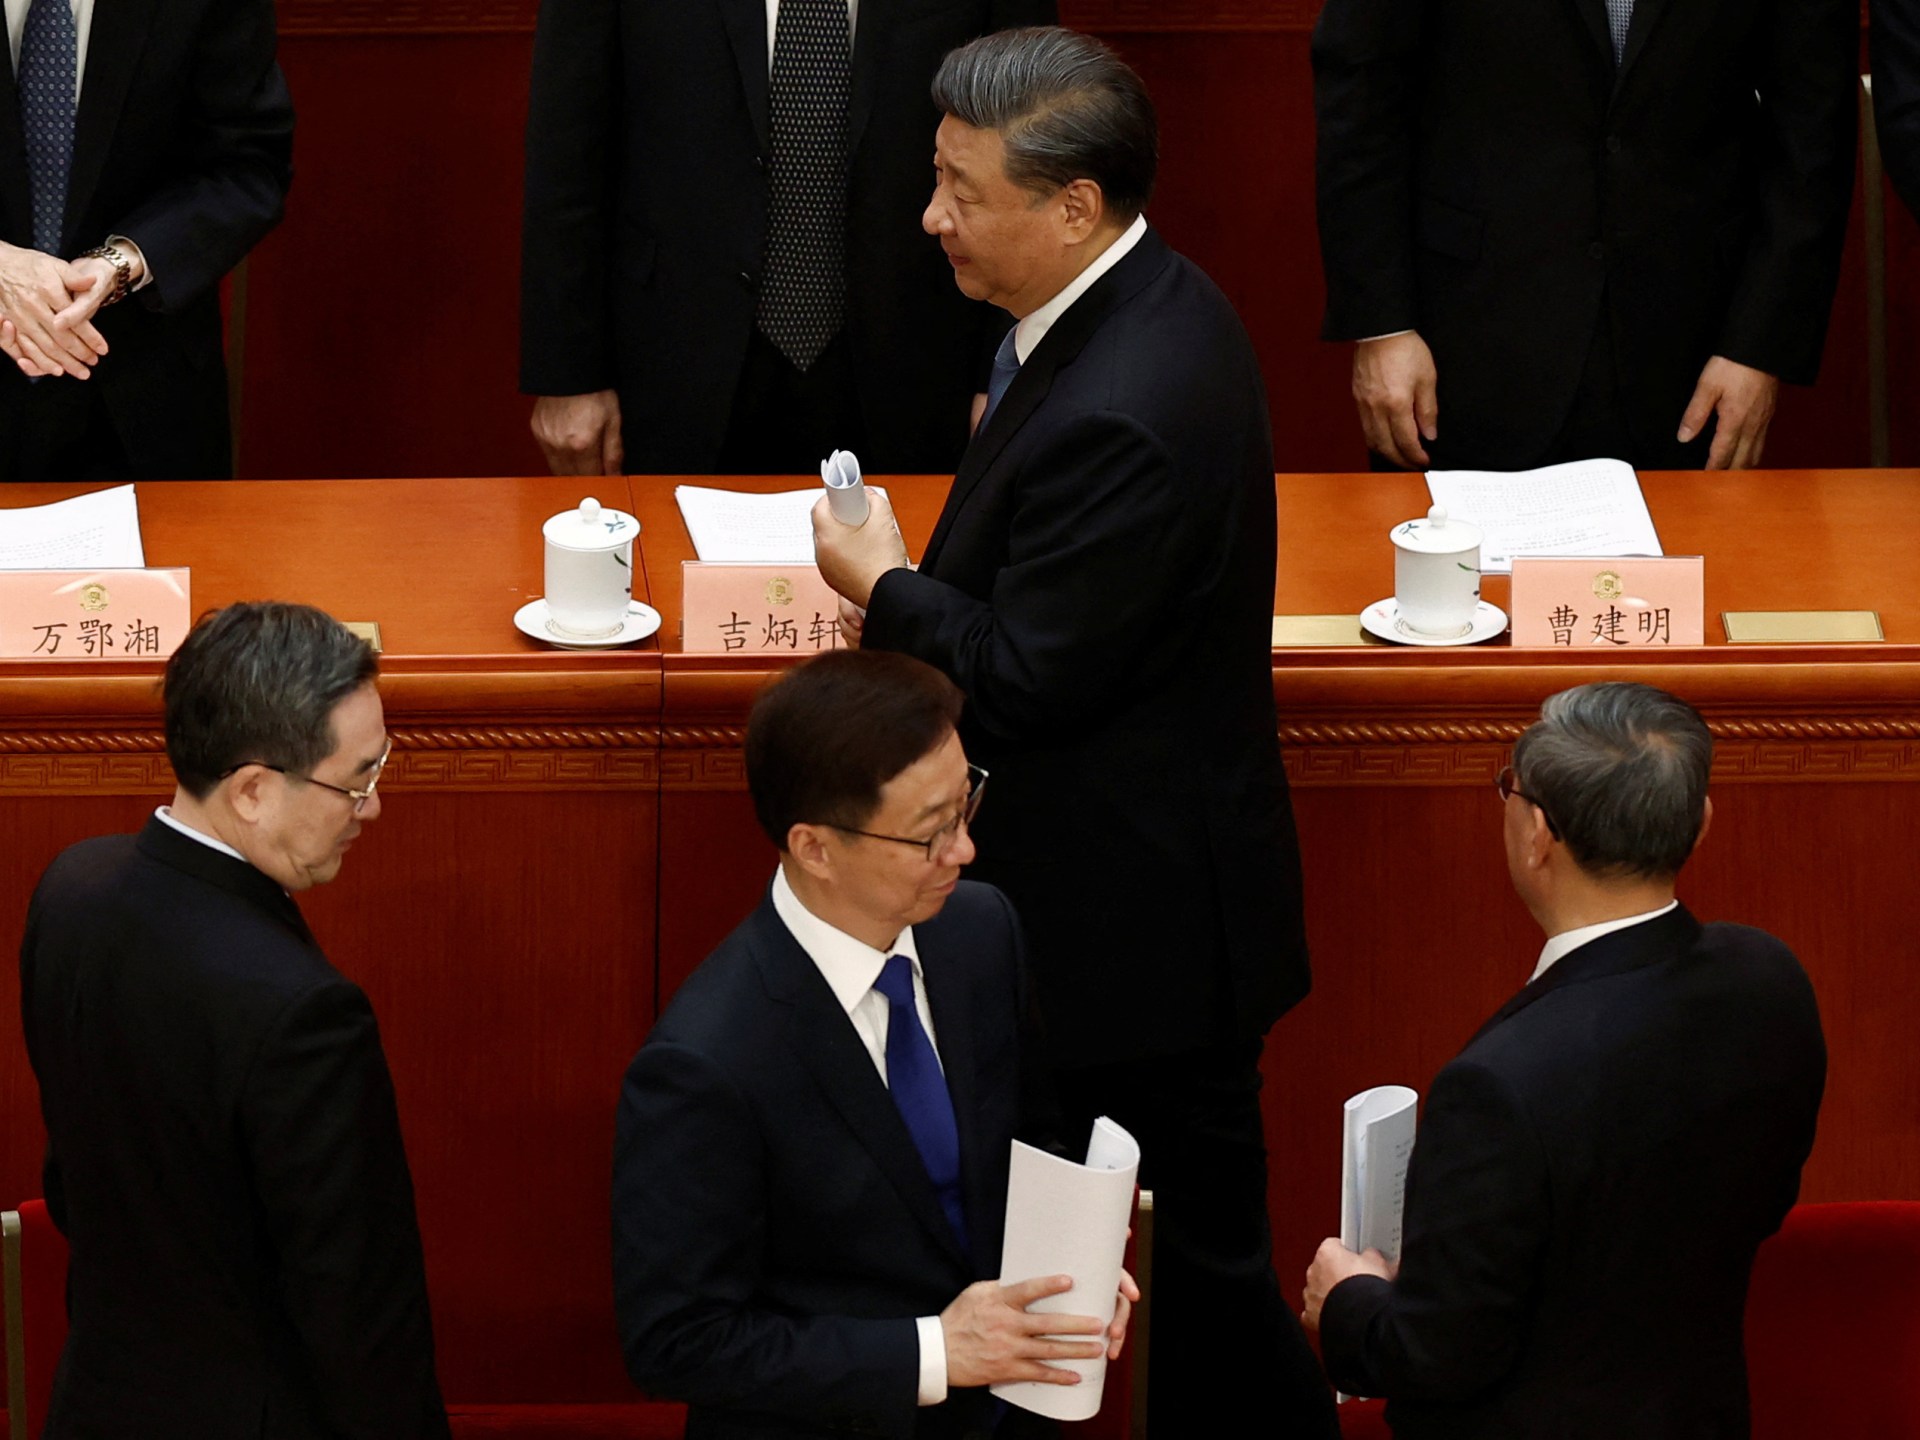 中国人大表决通过国家改革方案、新内阁| 政治新闻